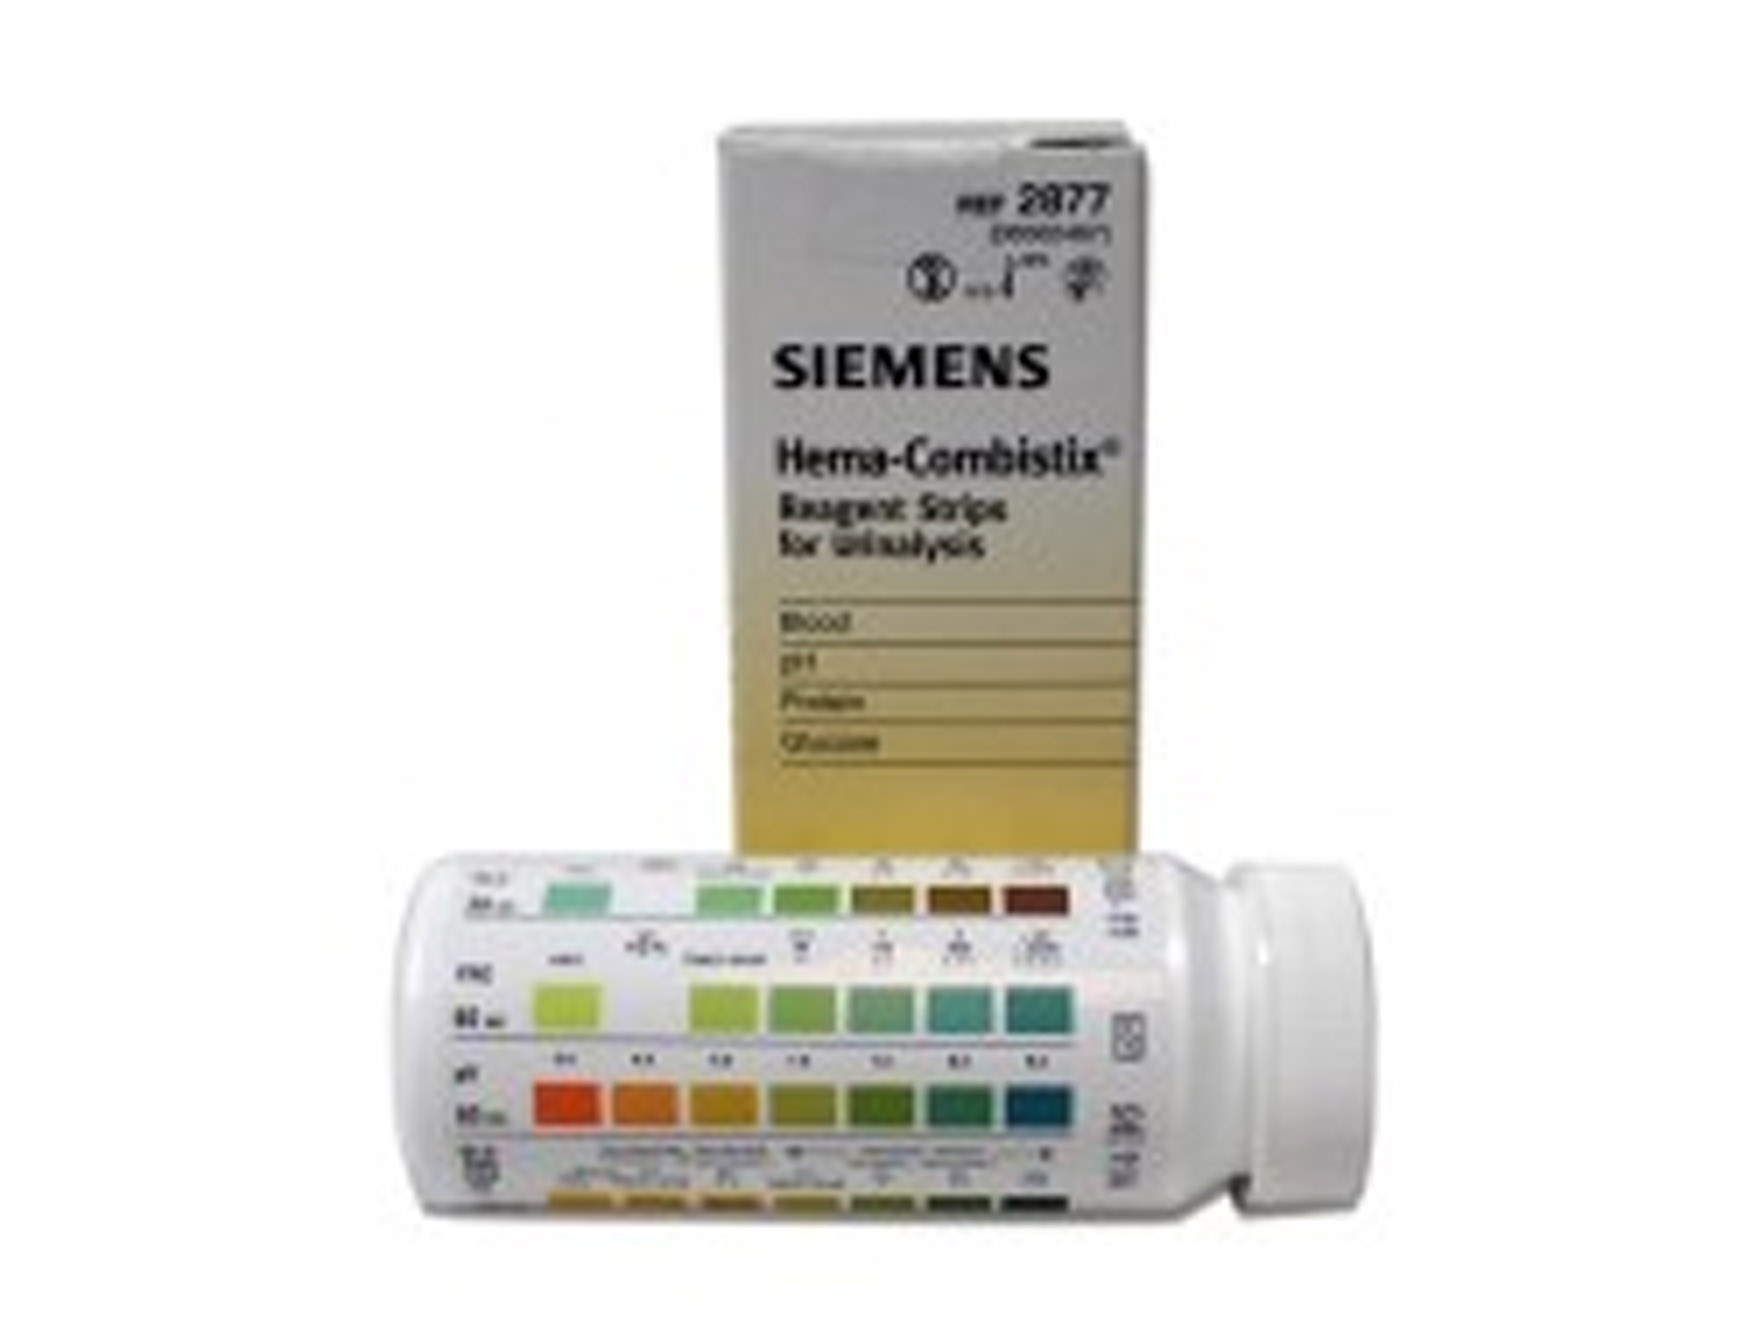 Hema-Combistix - 1 x 50 pcs